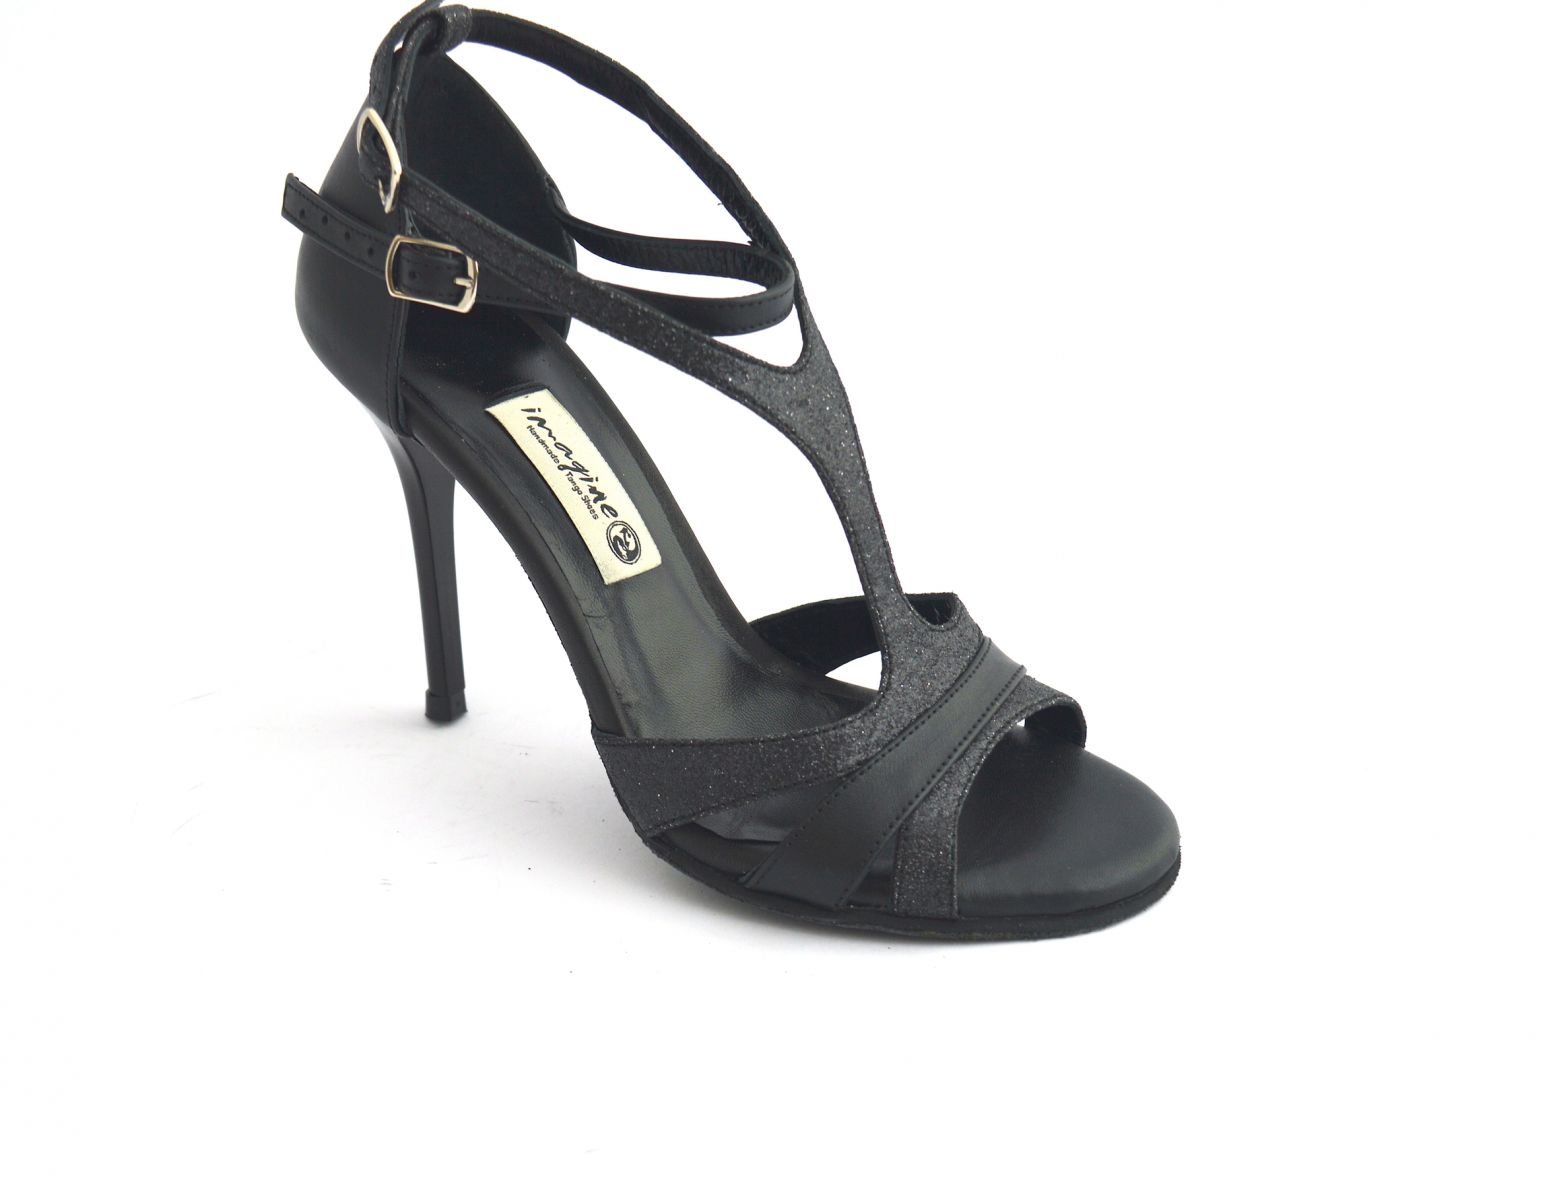 Γυναικείο παπούτσι tango, open toe από μαύρο δέρμα και μαύρο γκλίτερ.